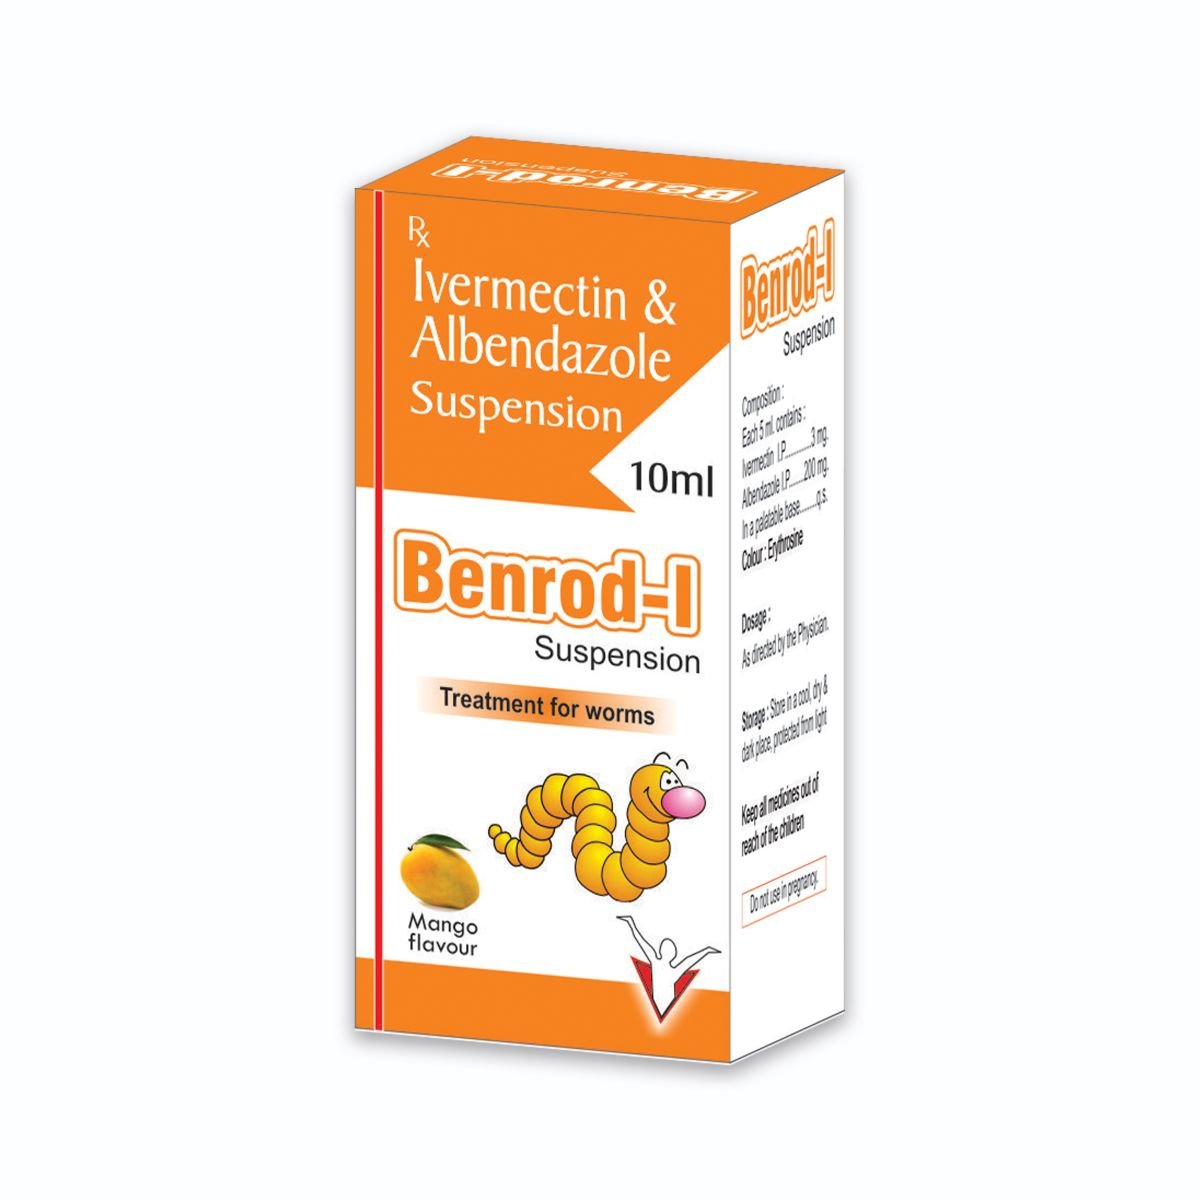 BENROD-I Suspension